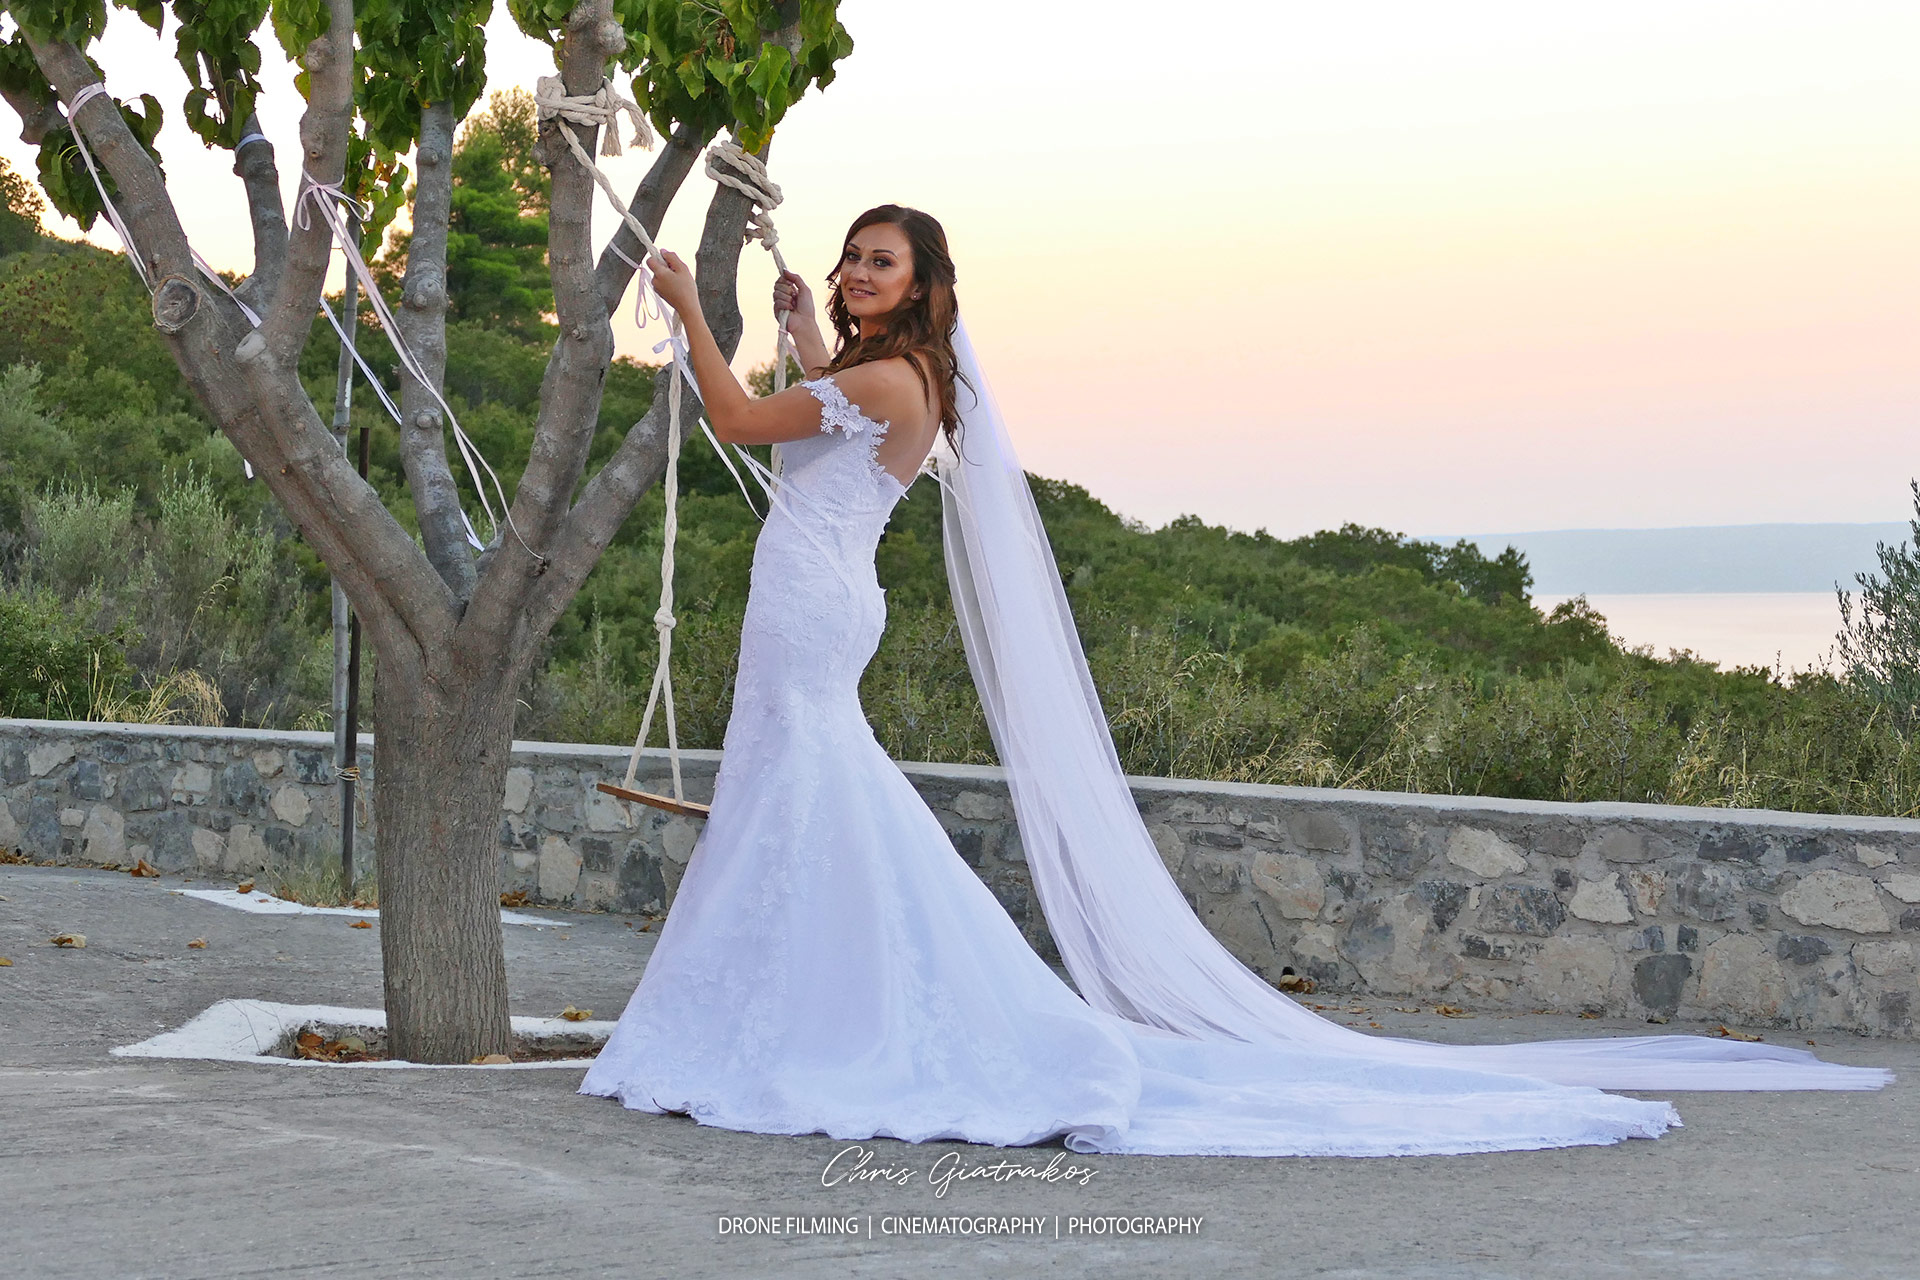 Βίντεο γάμου με drone - Drone Wedding Photography -GIATRAKOS-19